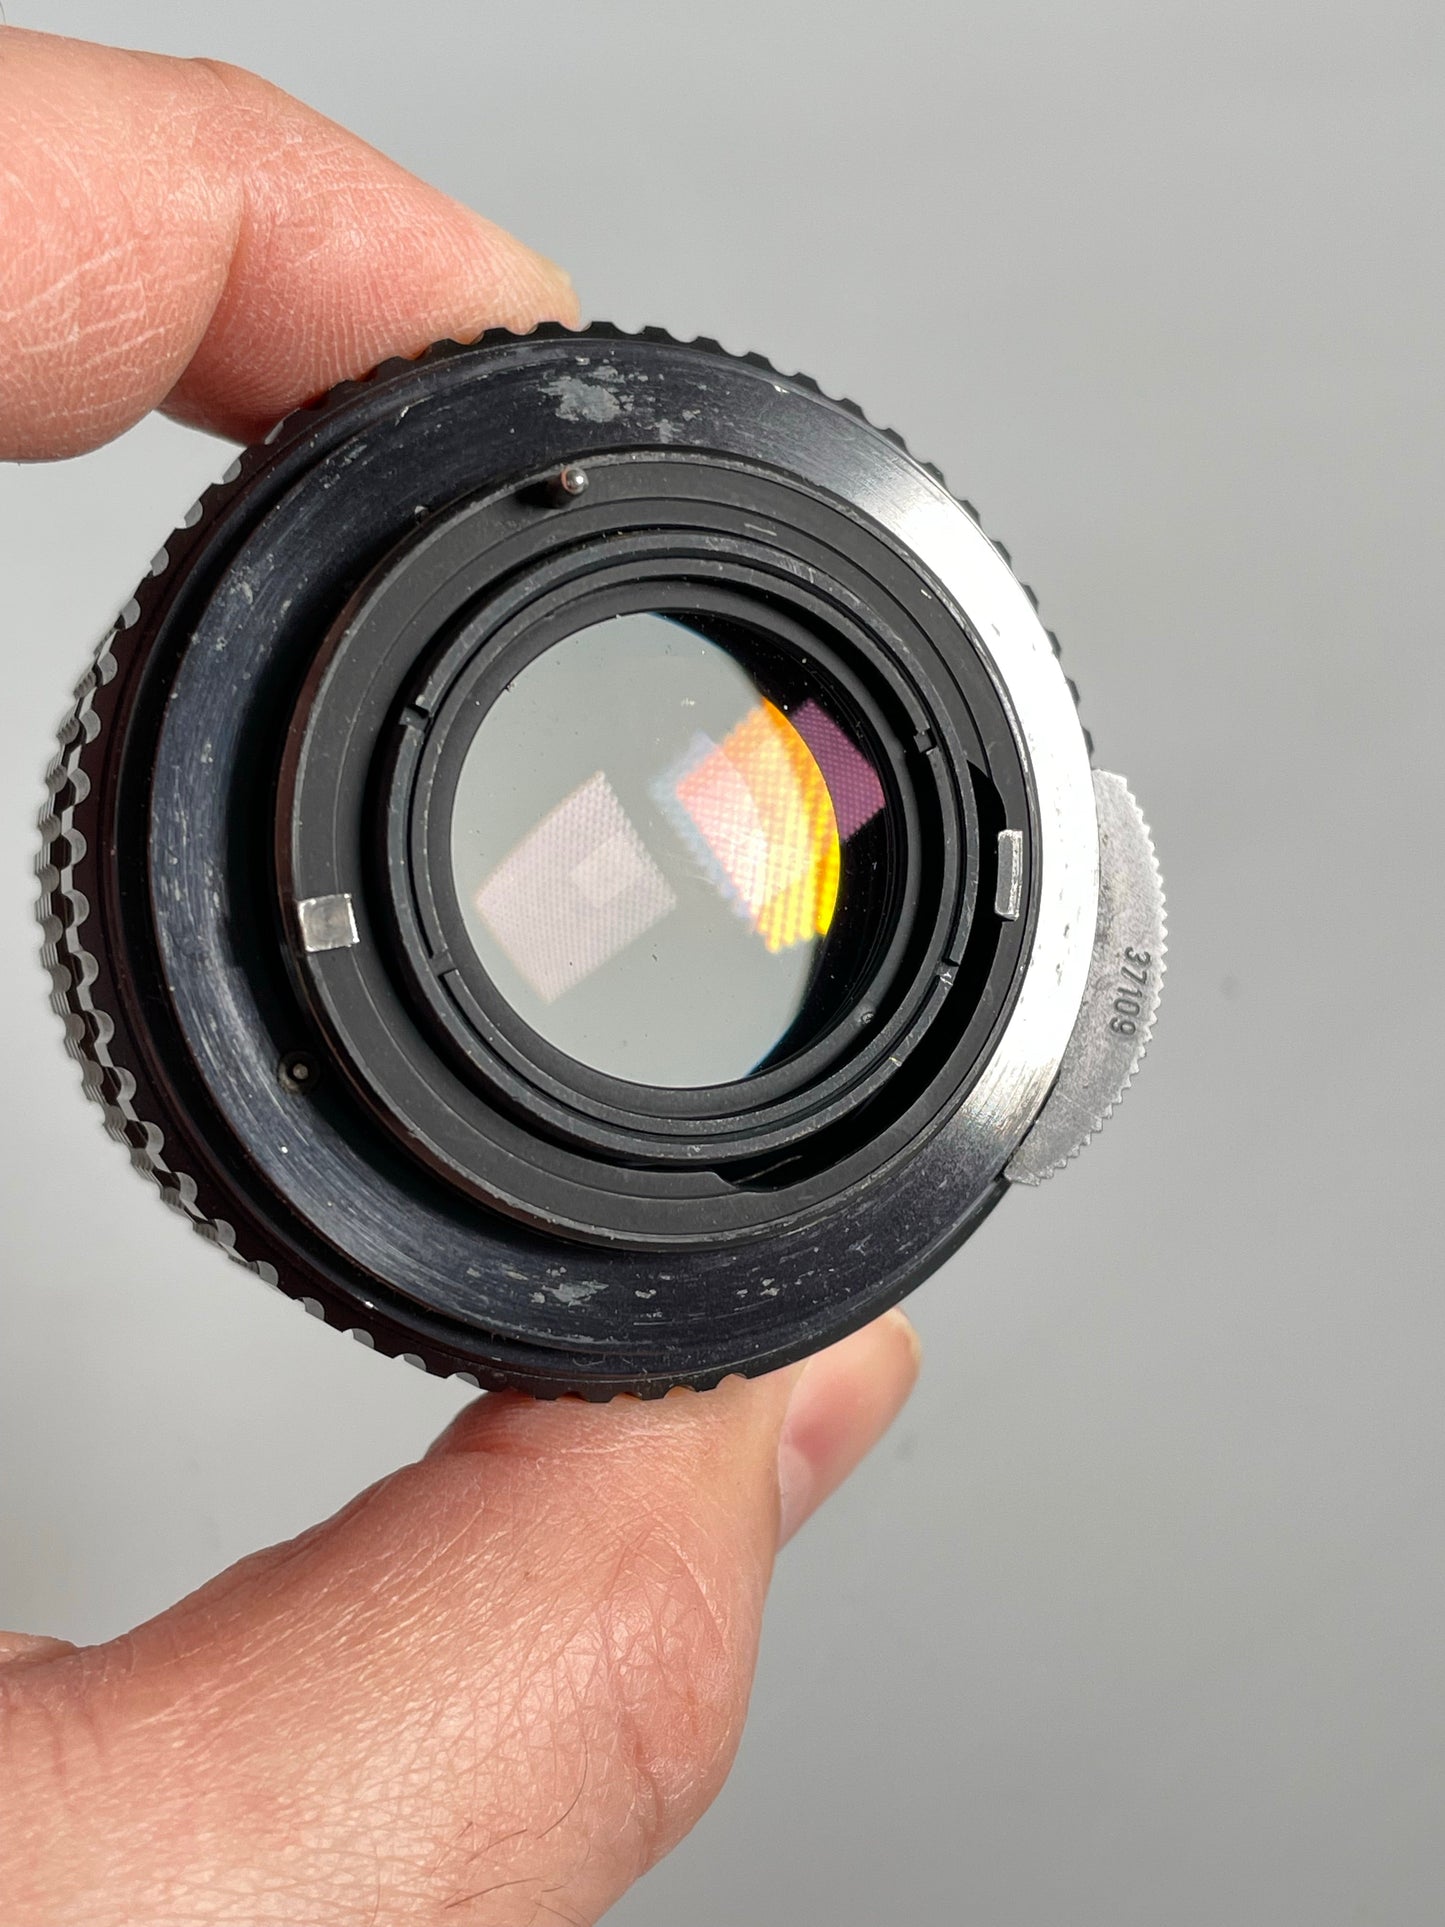 Pentax SMC 55mm f2 Prime Manual Focus Lens M42